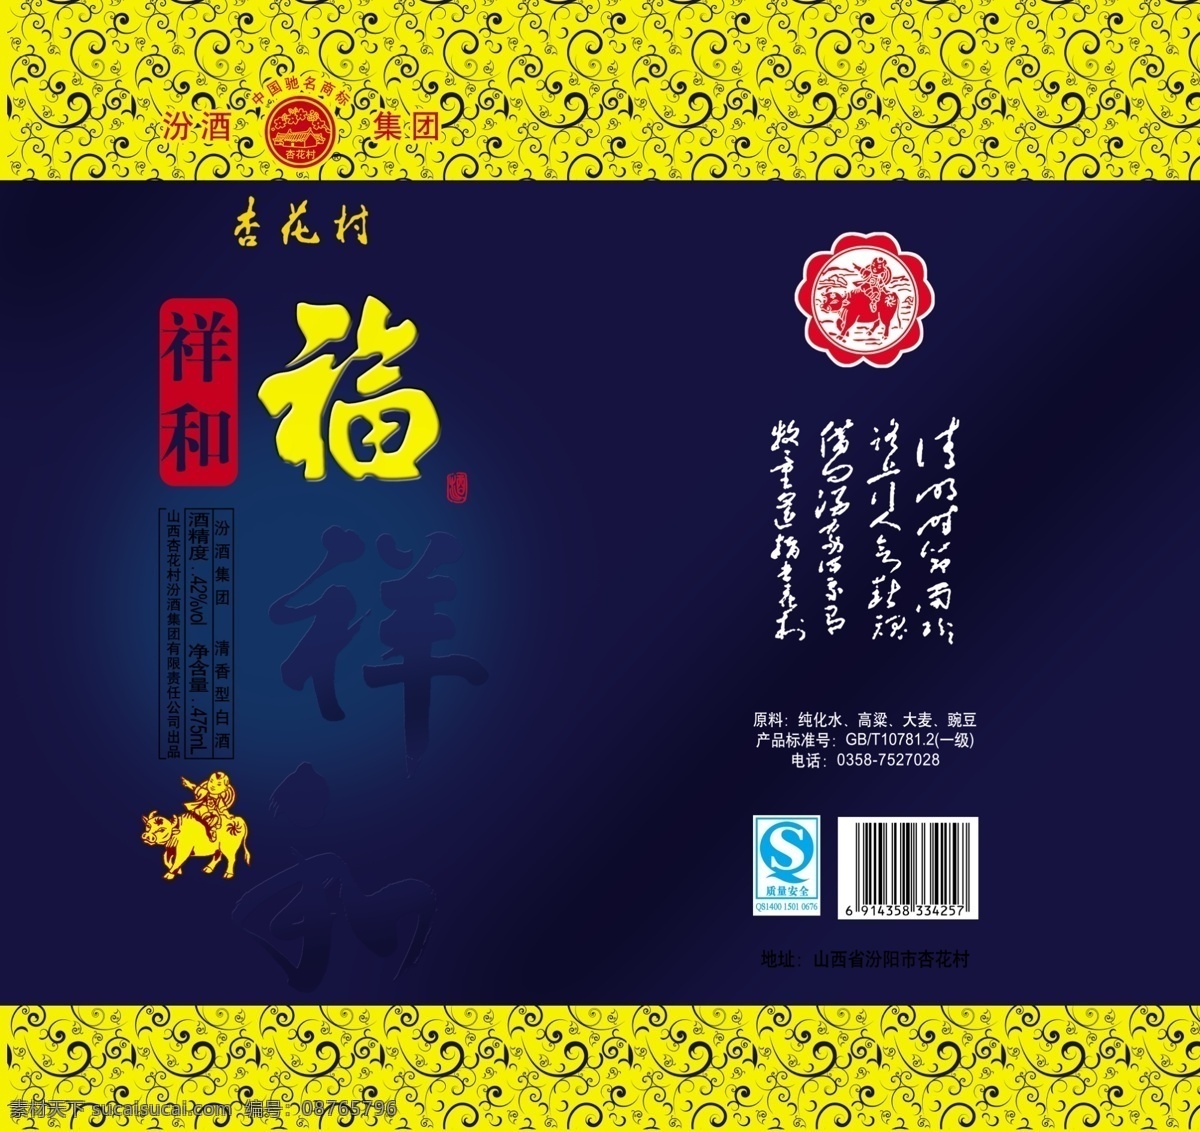 杏花村 酒品包装 包装模板 分层素材 psd格式 设计素材 烟酒包装 psd源文件 蓝色